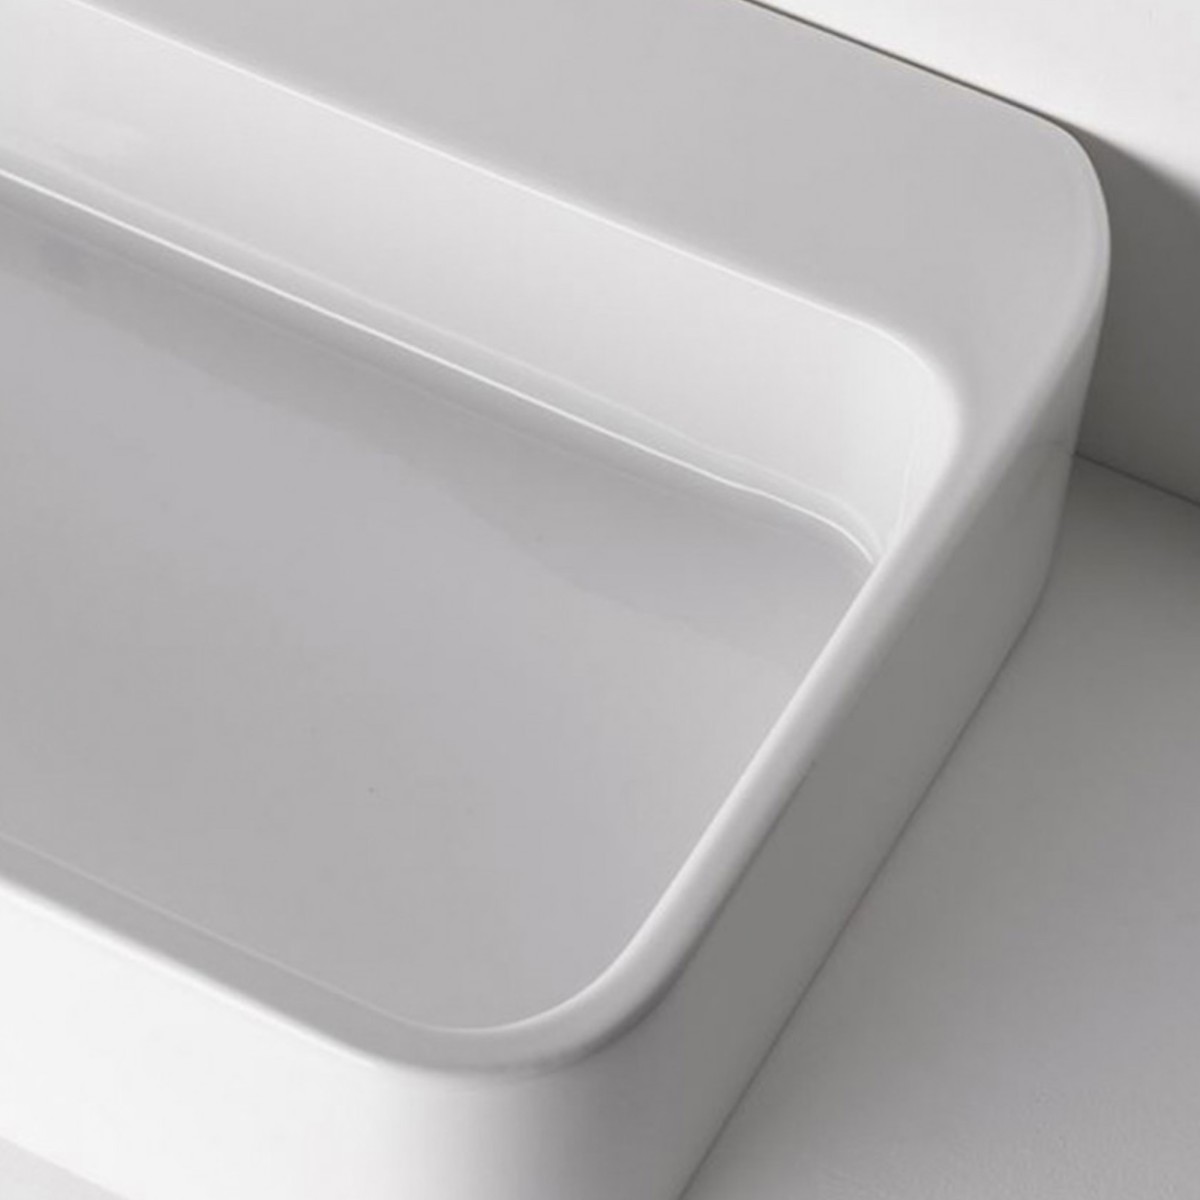 Lavandino da appoggio bagno 80x45 squadrato con troppo pieno in ceramica bianco lucido serie Astor.